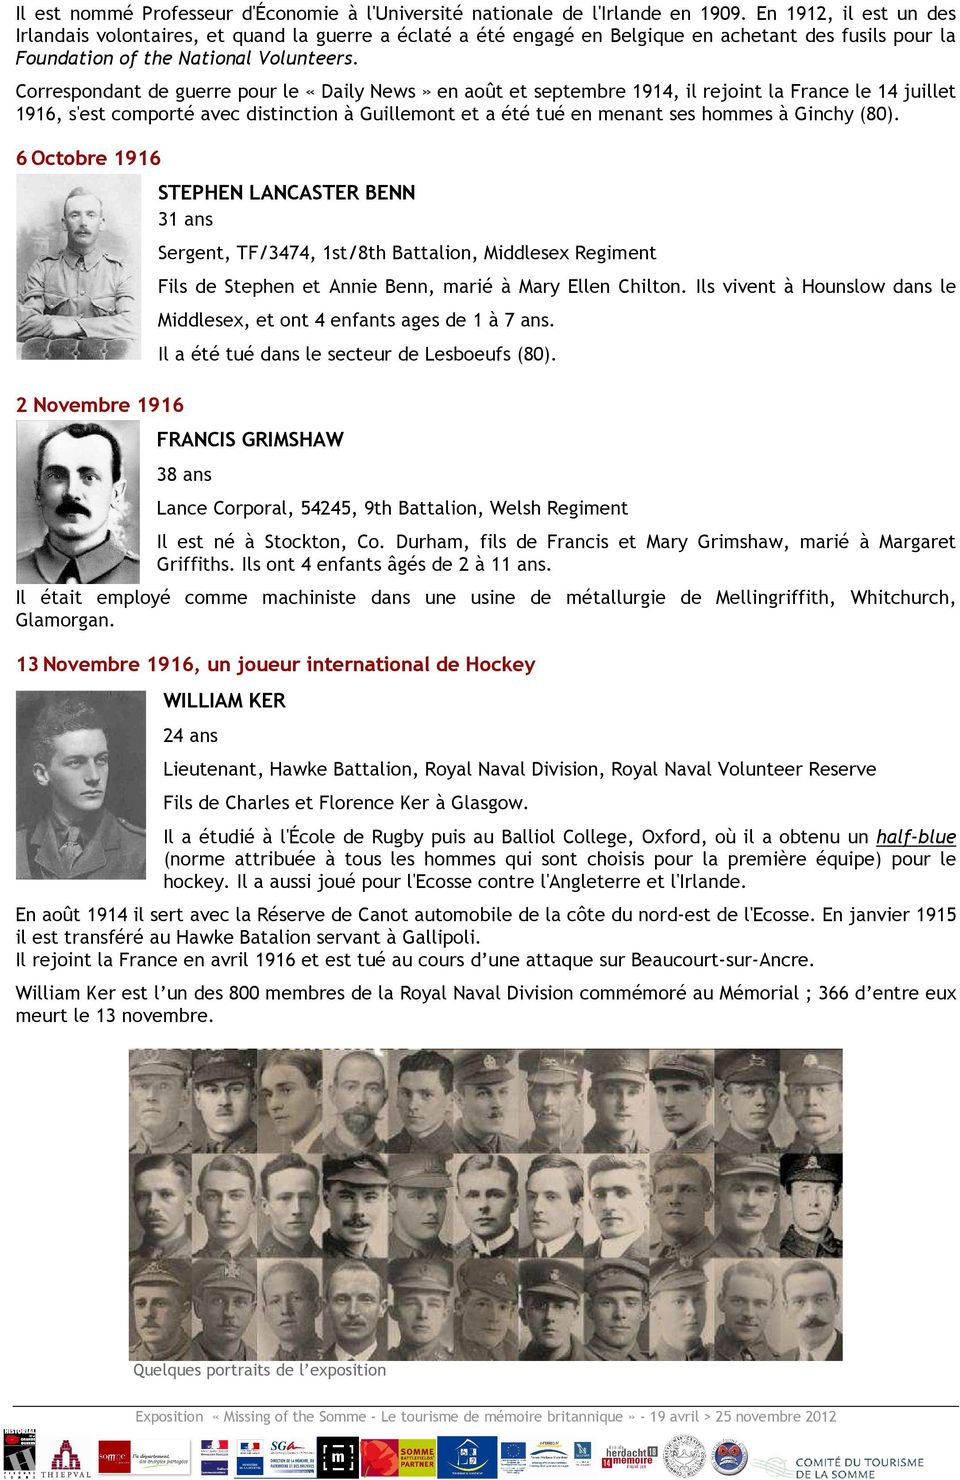 Correspondant de guerre pour le «Daily News» en août et septembre 1914, il rejoint la France le 14 juillet 1916, s'est comporté avec distinction à Guillemont et a été tué en menant ses hommes à